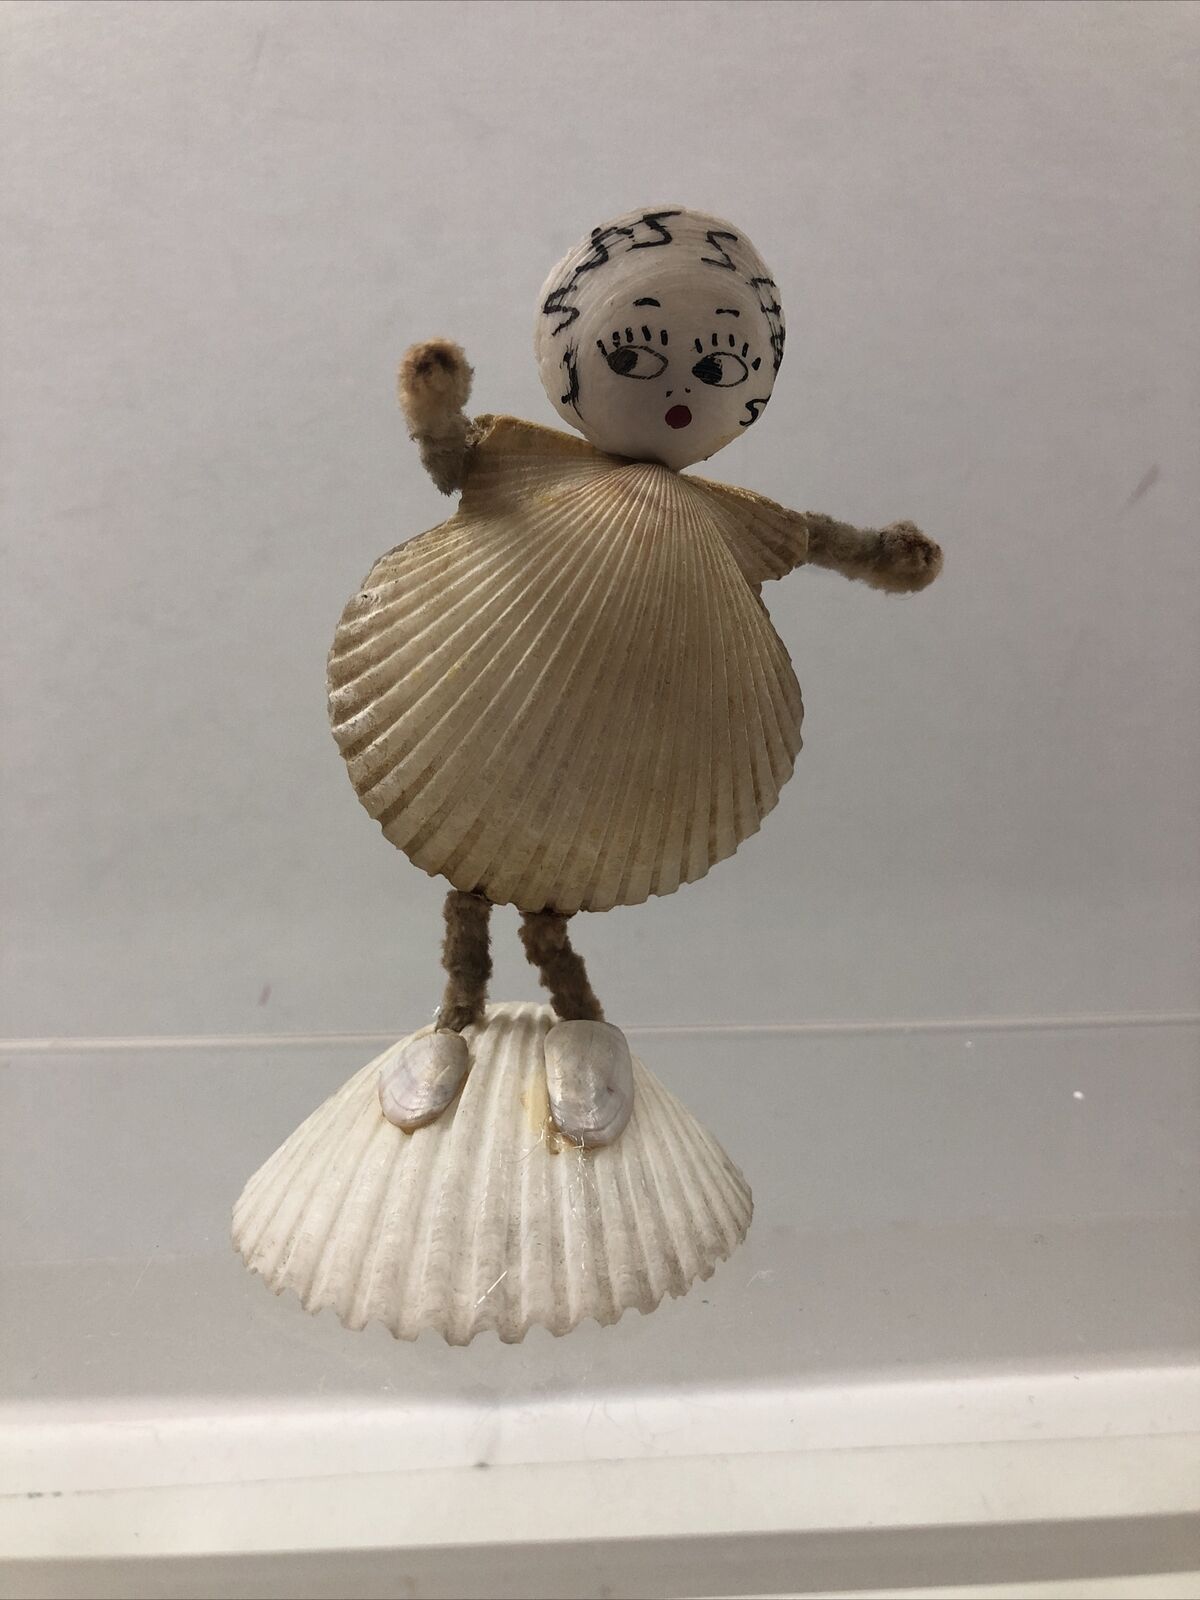 Vintage Seashell Art Doll - 1943 Souvenir Folk Art Decor Boho Beach Travel 4\